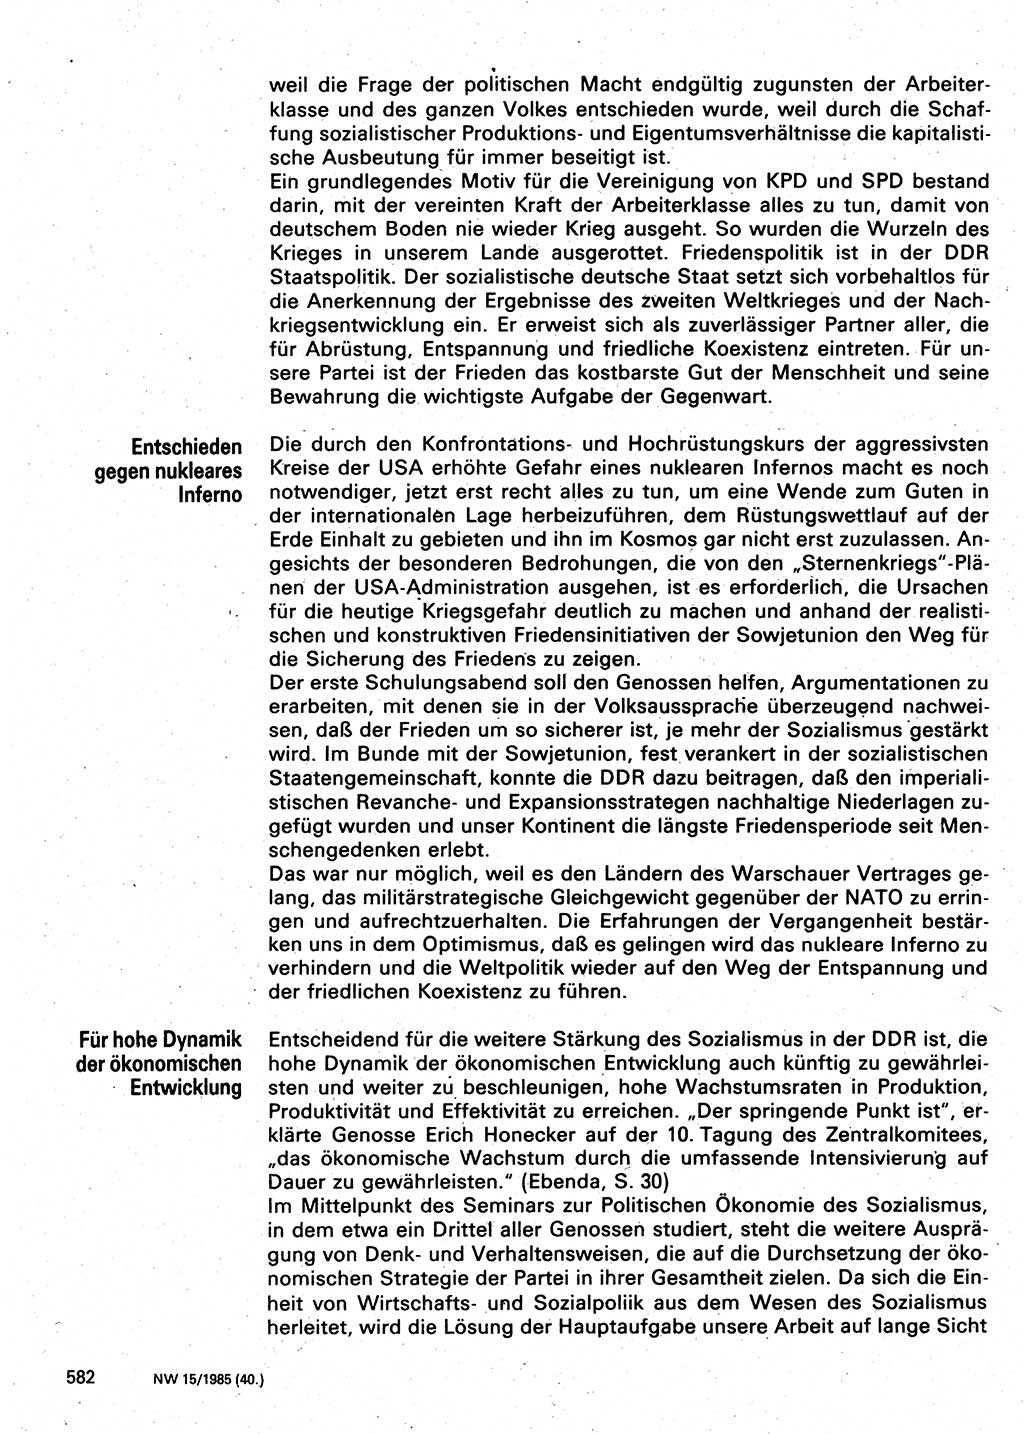 Neuer Weg (NW), Organ des Zentralkomitees (ZK) der SED (Sozialistische Einheitspartei Deutschlands) für Fragen des Parteilebens, 40. Jahrgang [Deutsche Demokratische Republik (DDR)] 1985, Seite 582 (NW ZK SED DDR 1985, S. 582)